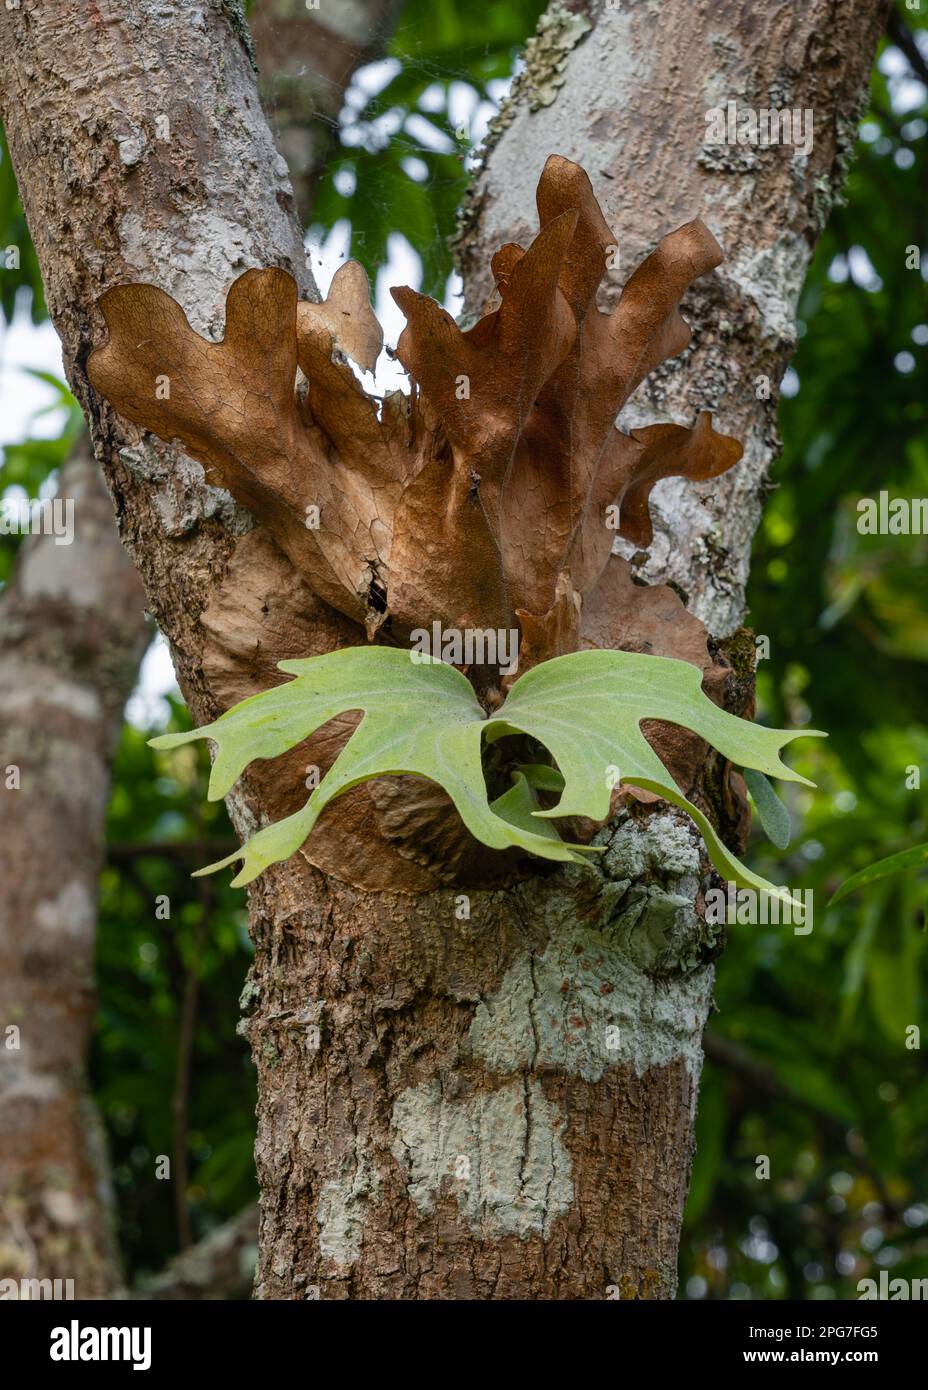 Vue rapprochée de jeunes wallichii platycerium aka staghorn Fern ou elkhorn Fern avec nouvelle croissance fraîche dans l'environnement naturel extérieur, nord de la Thaïlande Banque D'Images